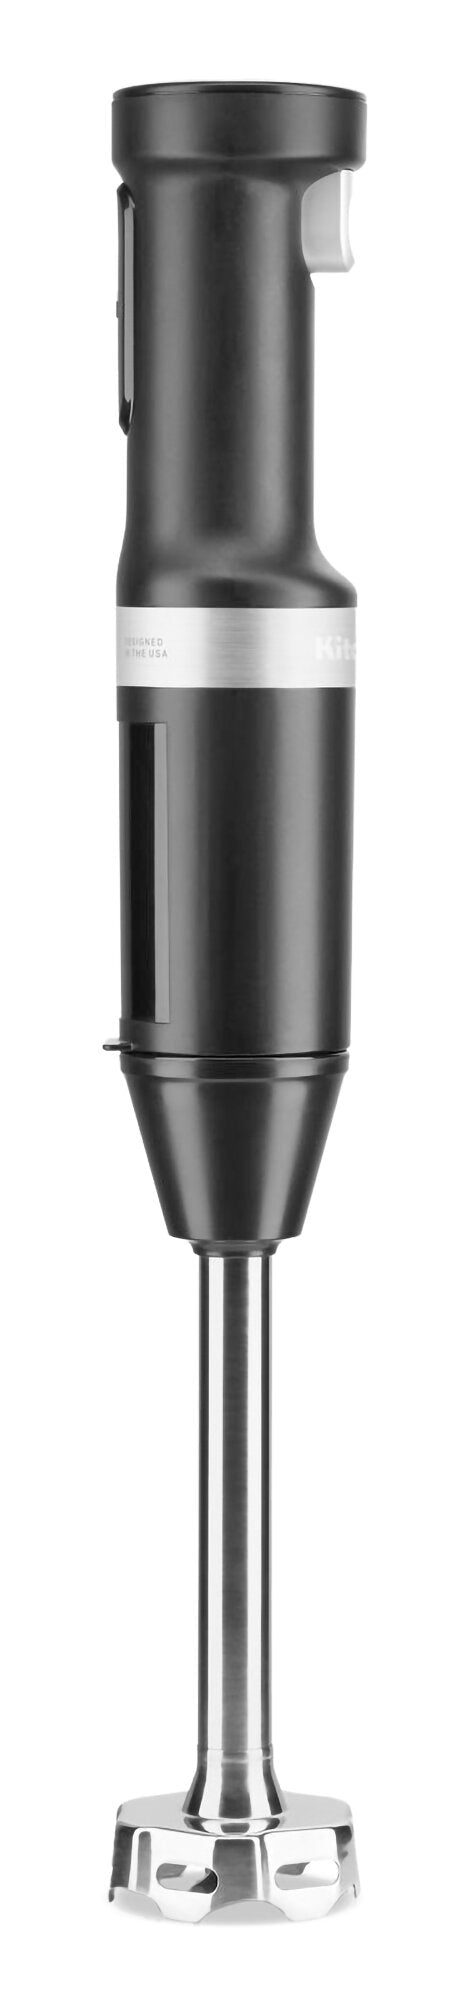 KitchenAid KHBBV53BM Cordless Variable Speed Hand Blender Black Matte/